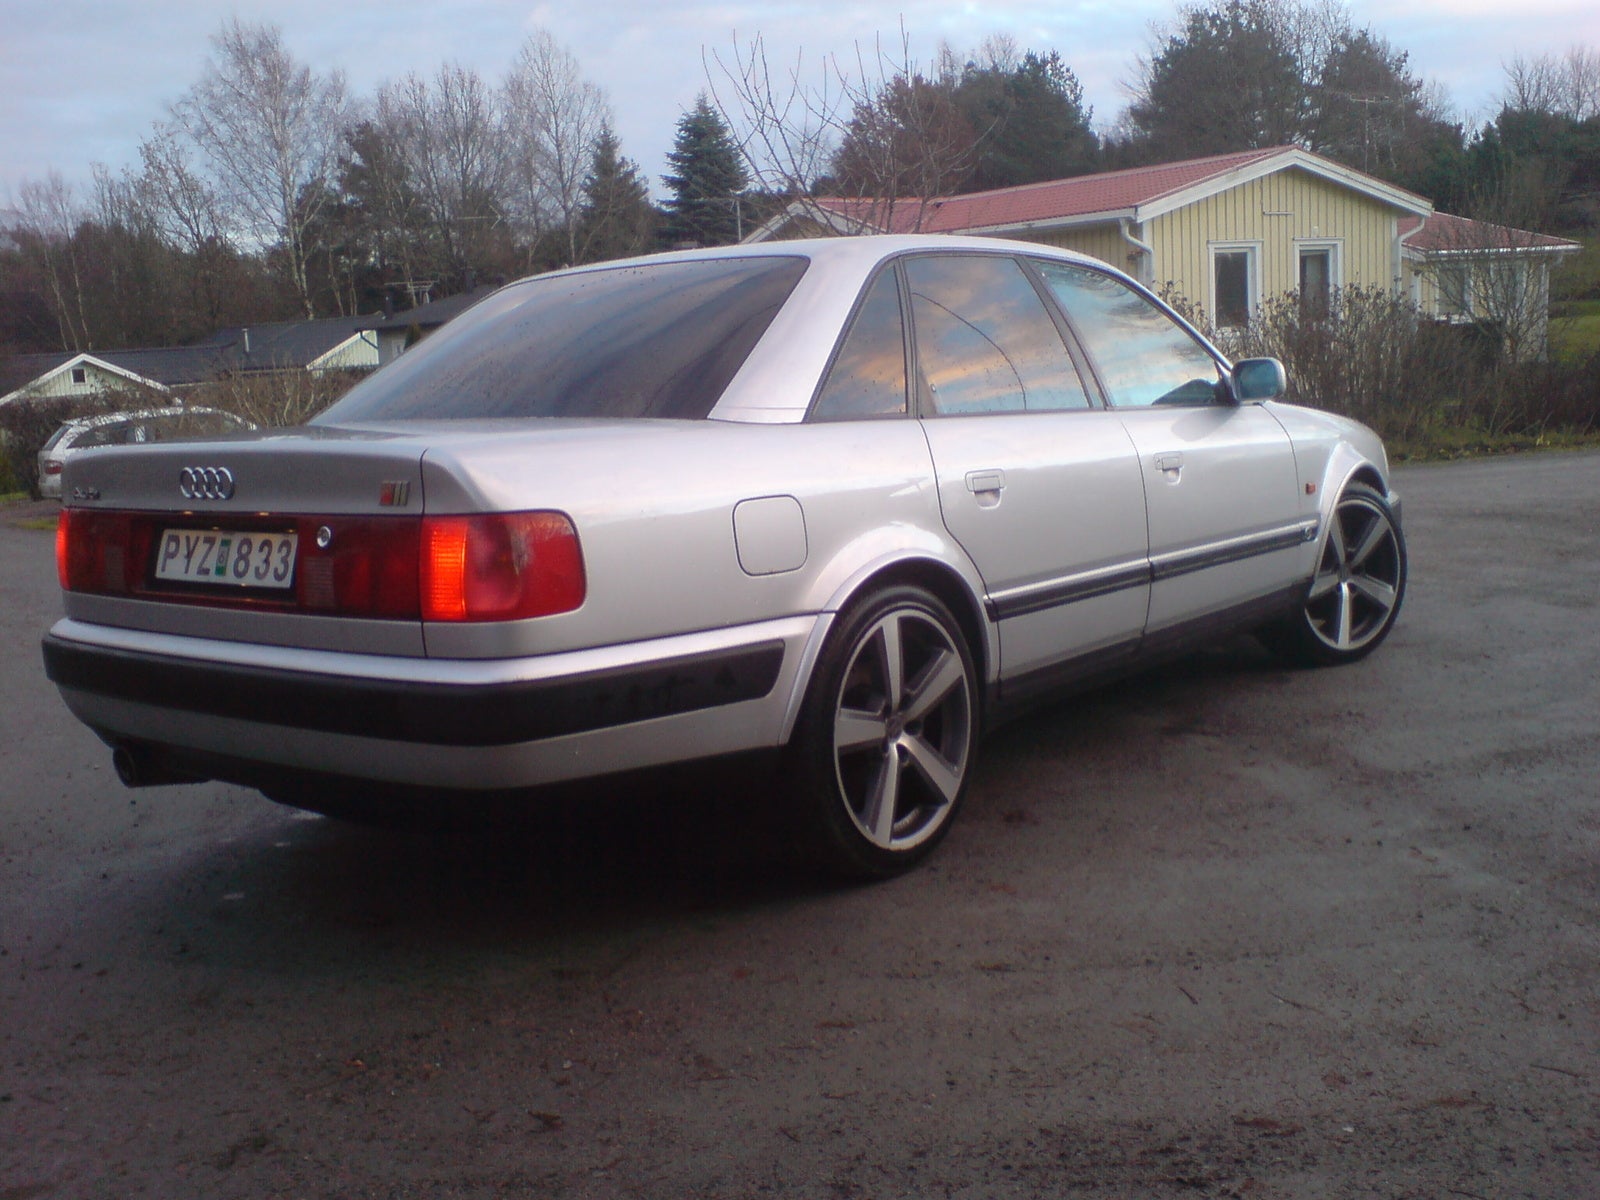 200 20 а 6 60. Audi s4 1992. Ауди s4 1994 quattro. Ауди 100 с4 кватро сбоку. Ауди 100 19щ4.